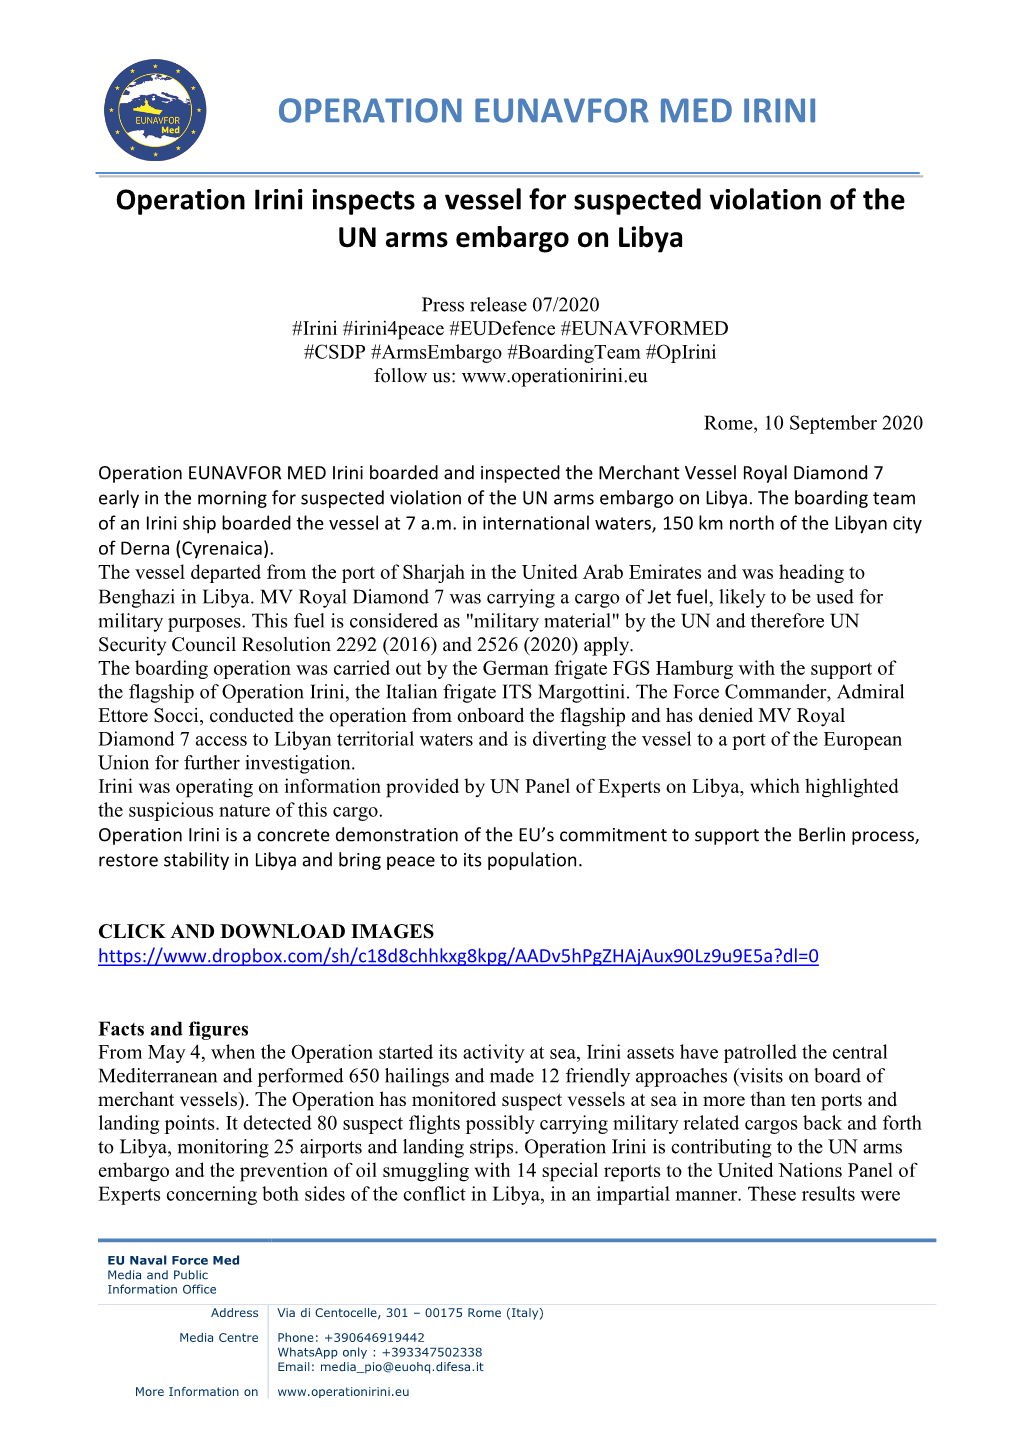 Press Release 07/2020 #Irini #Irini4peace #Eudefence #EUNAVFORMED #CSDP #Armsembargo #Boardingteam #Opirini Follow Us